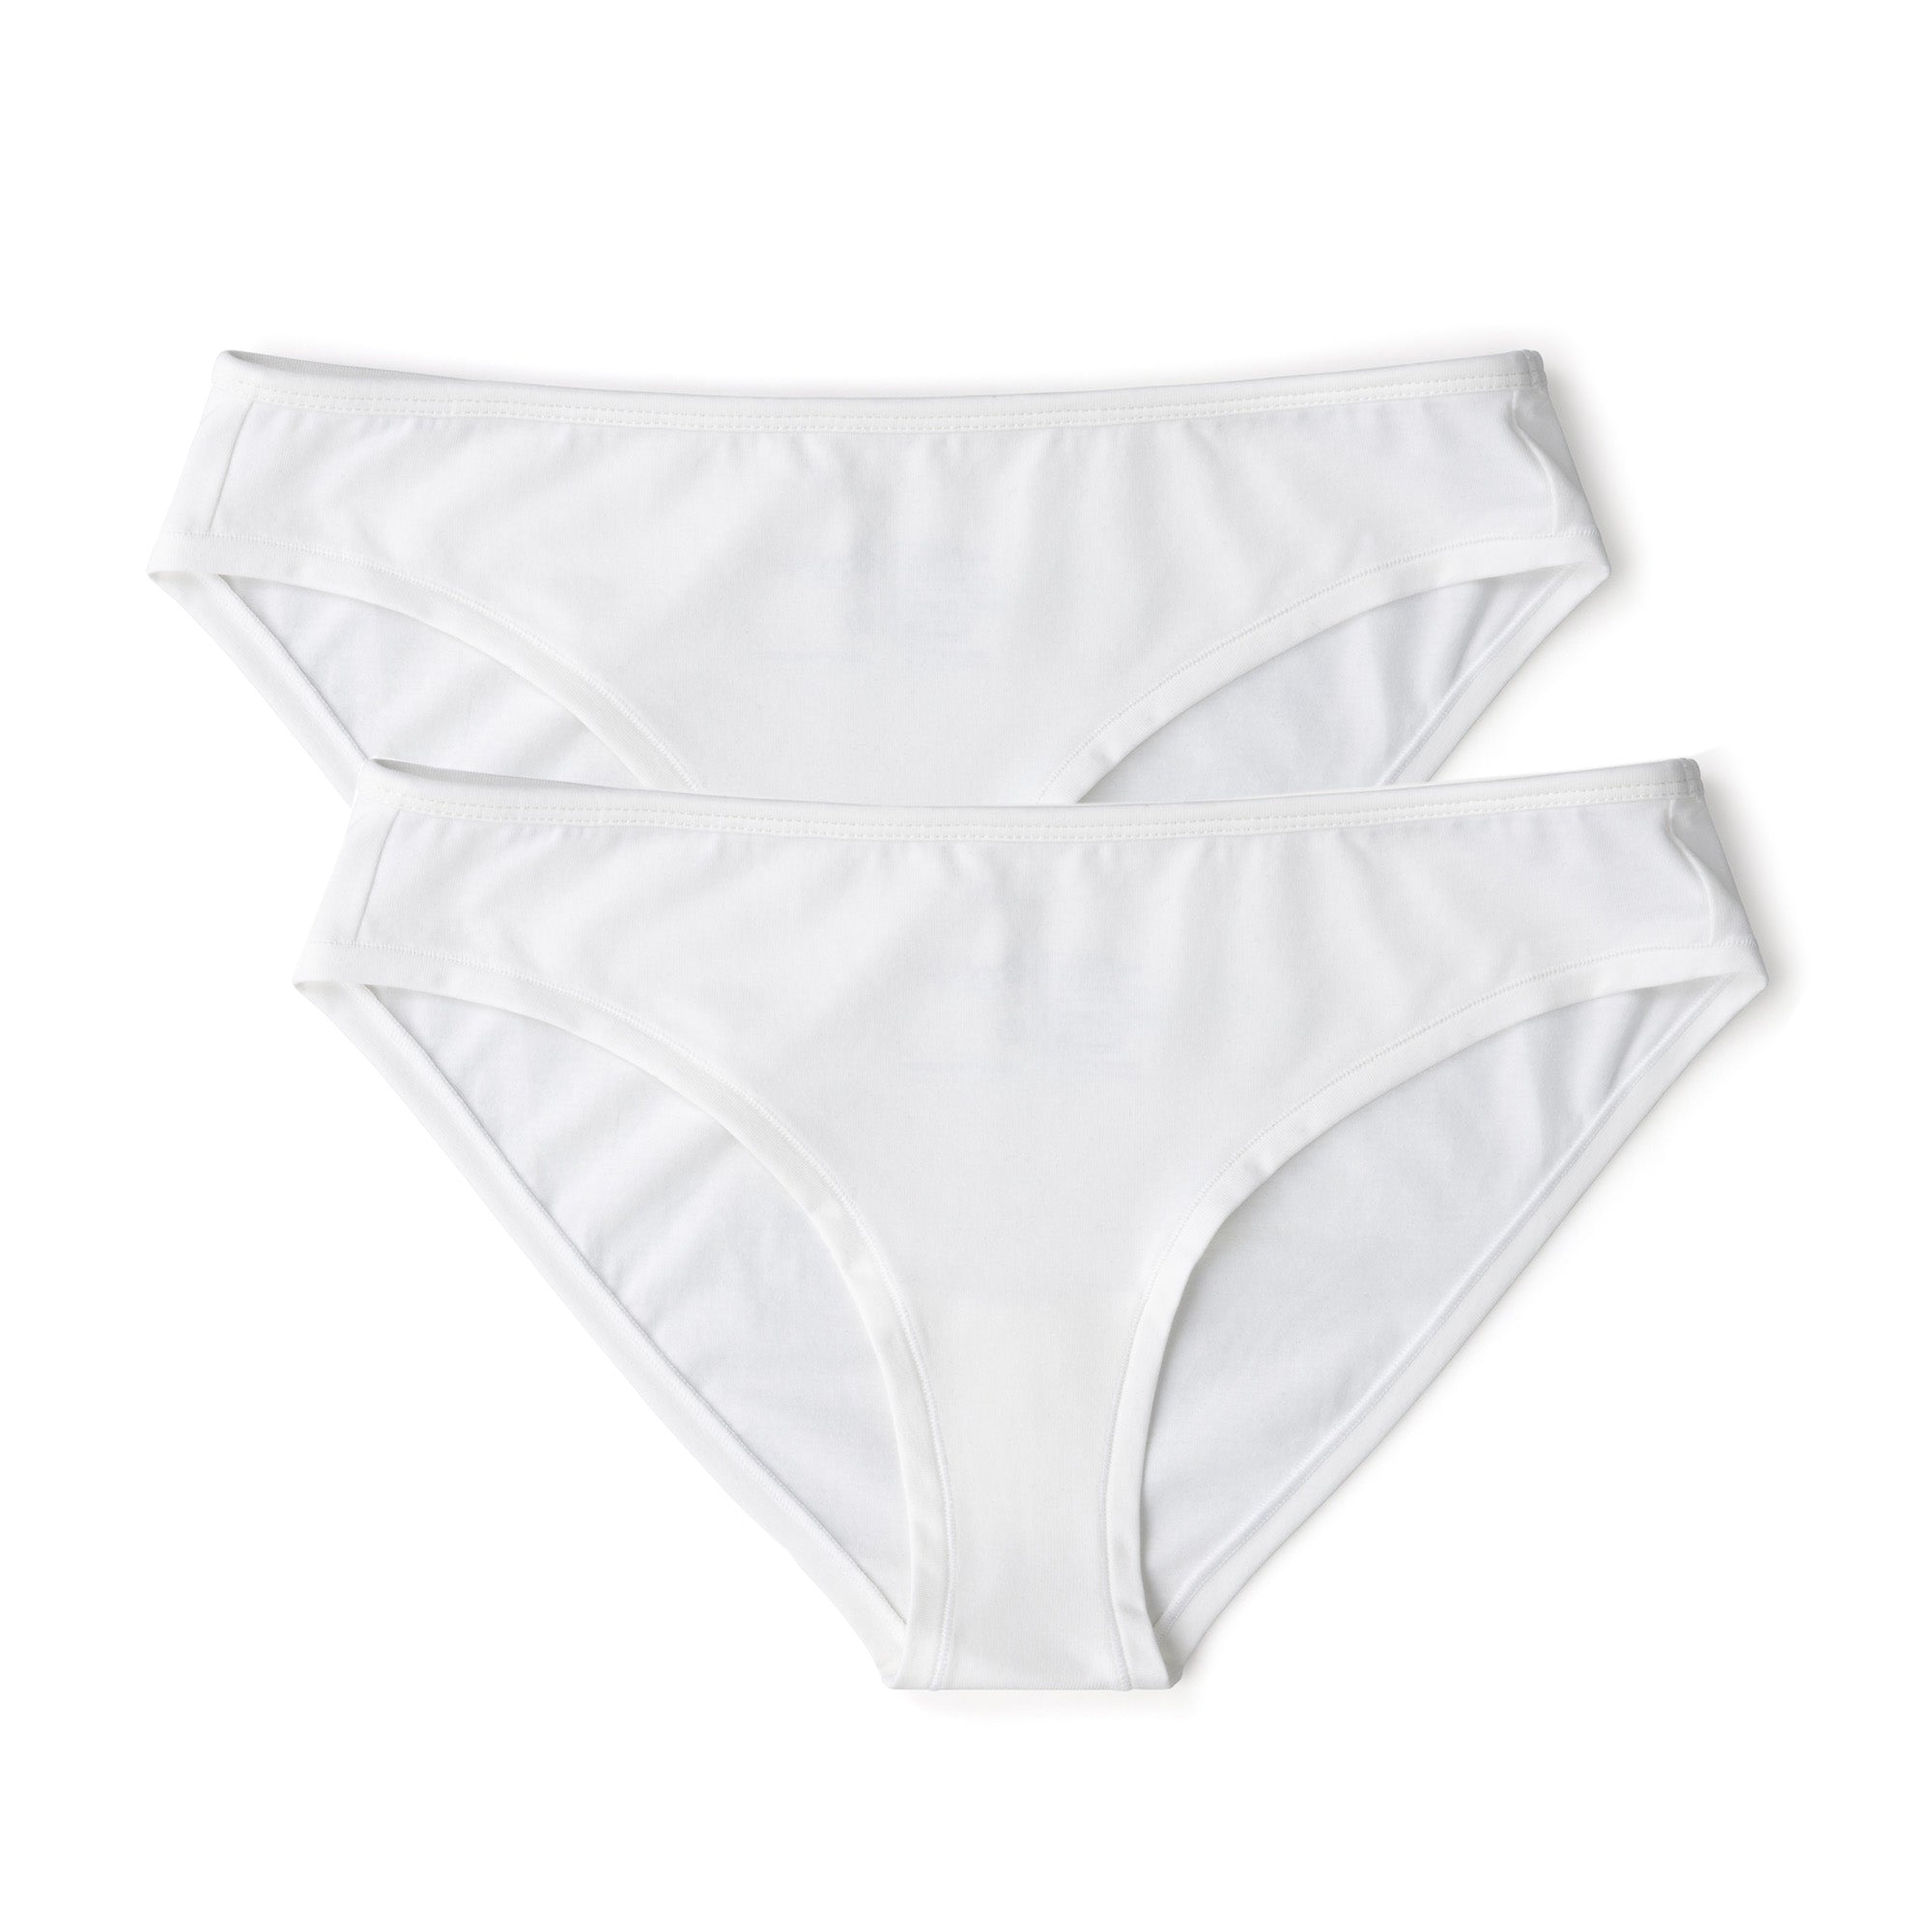 Combed cotton white briefs (sports underwear/brief briefs/girls underwear/ seamless/elastic/mid-waist) - Shop aurastro Women's Underwear - Pinkoi